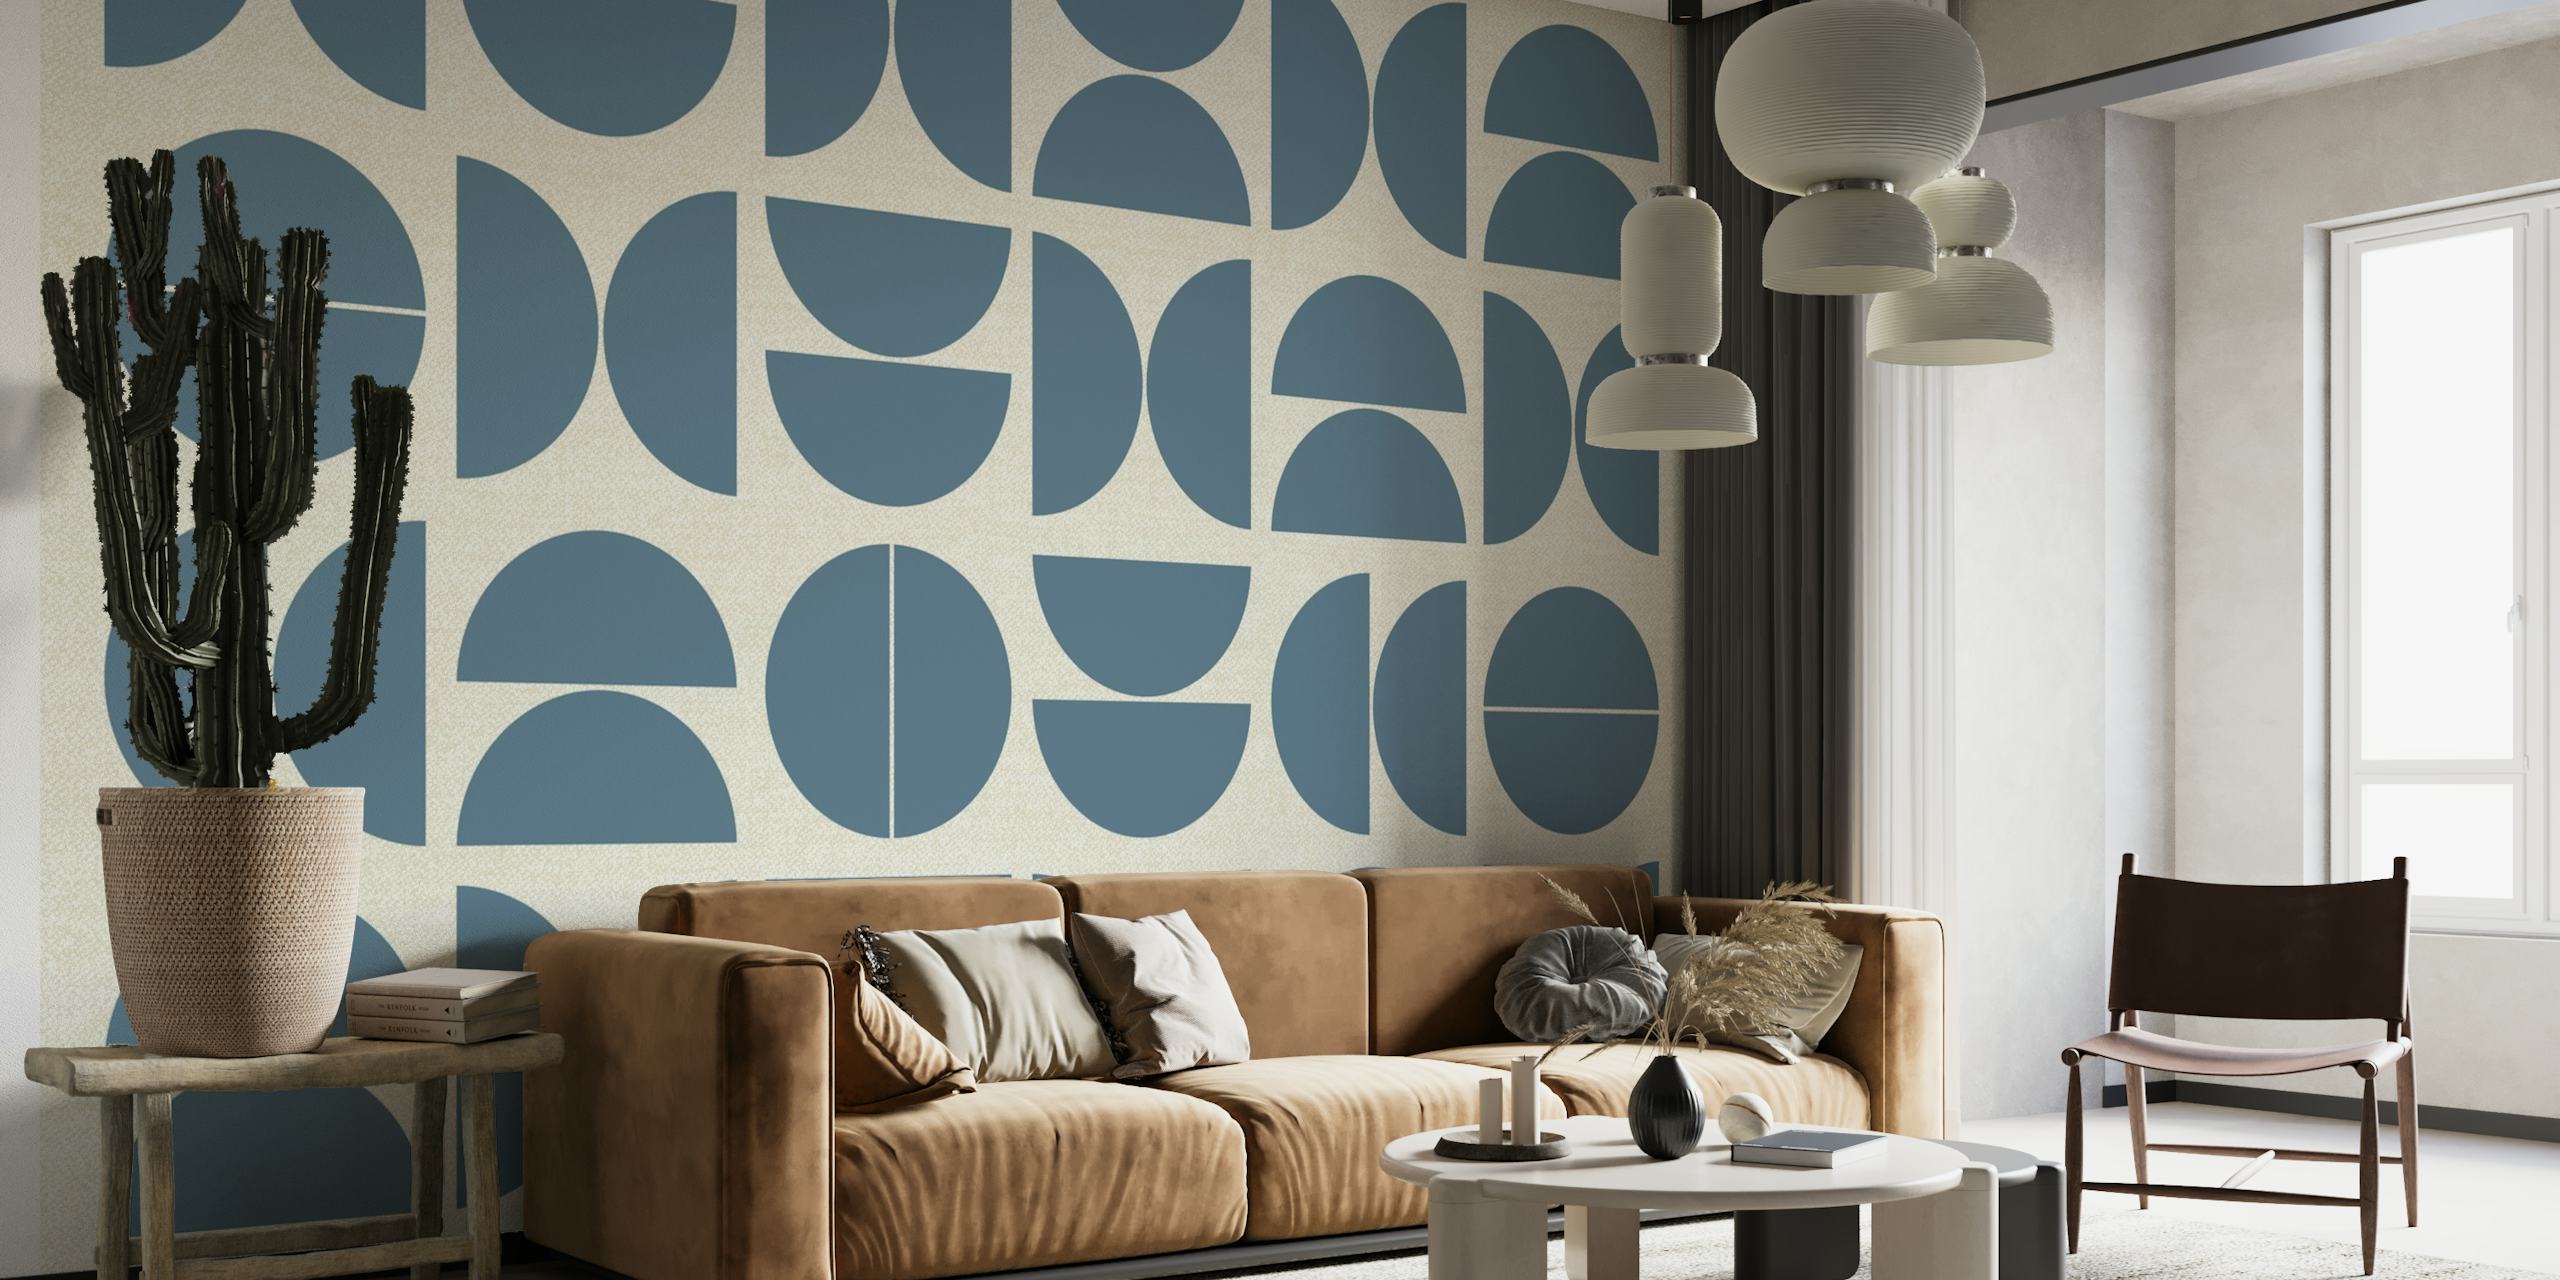 Mural abstracto de estilo Bauhaus con motivos circulares geométricos en tonos azules